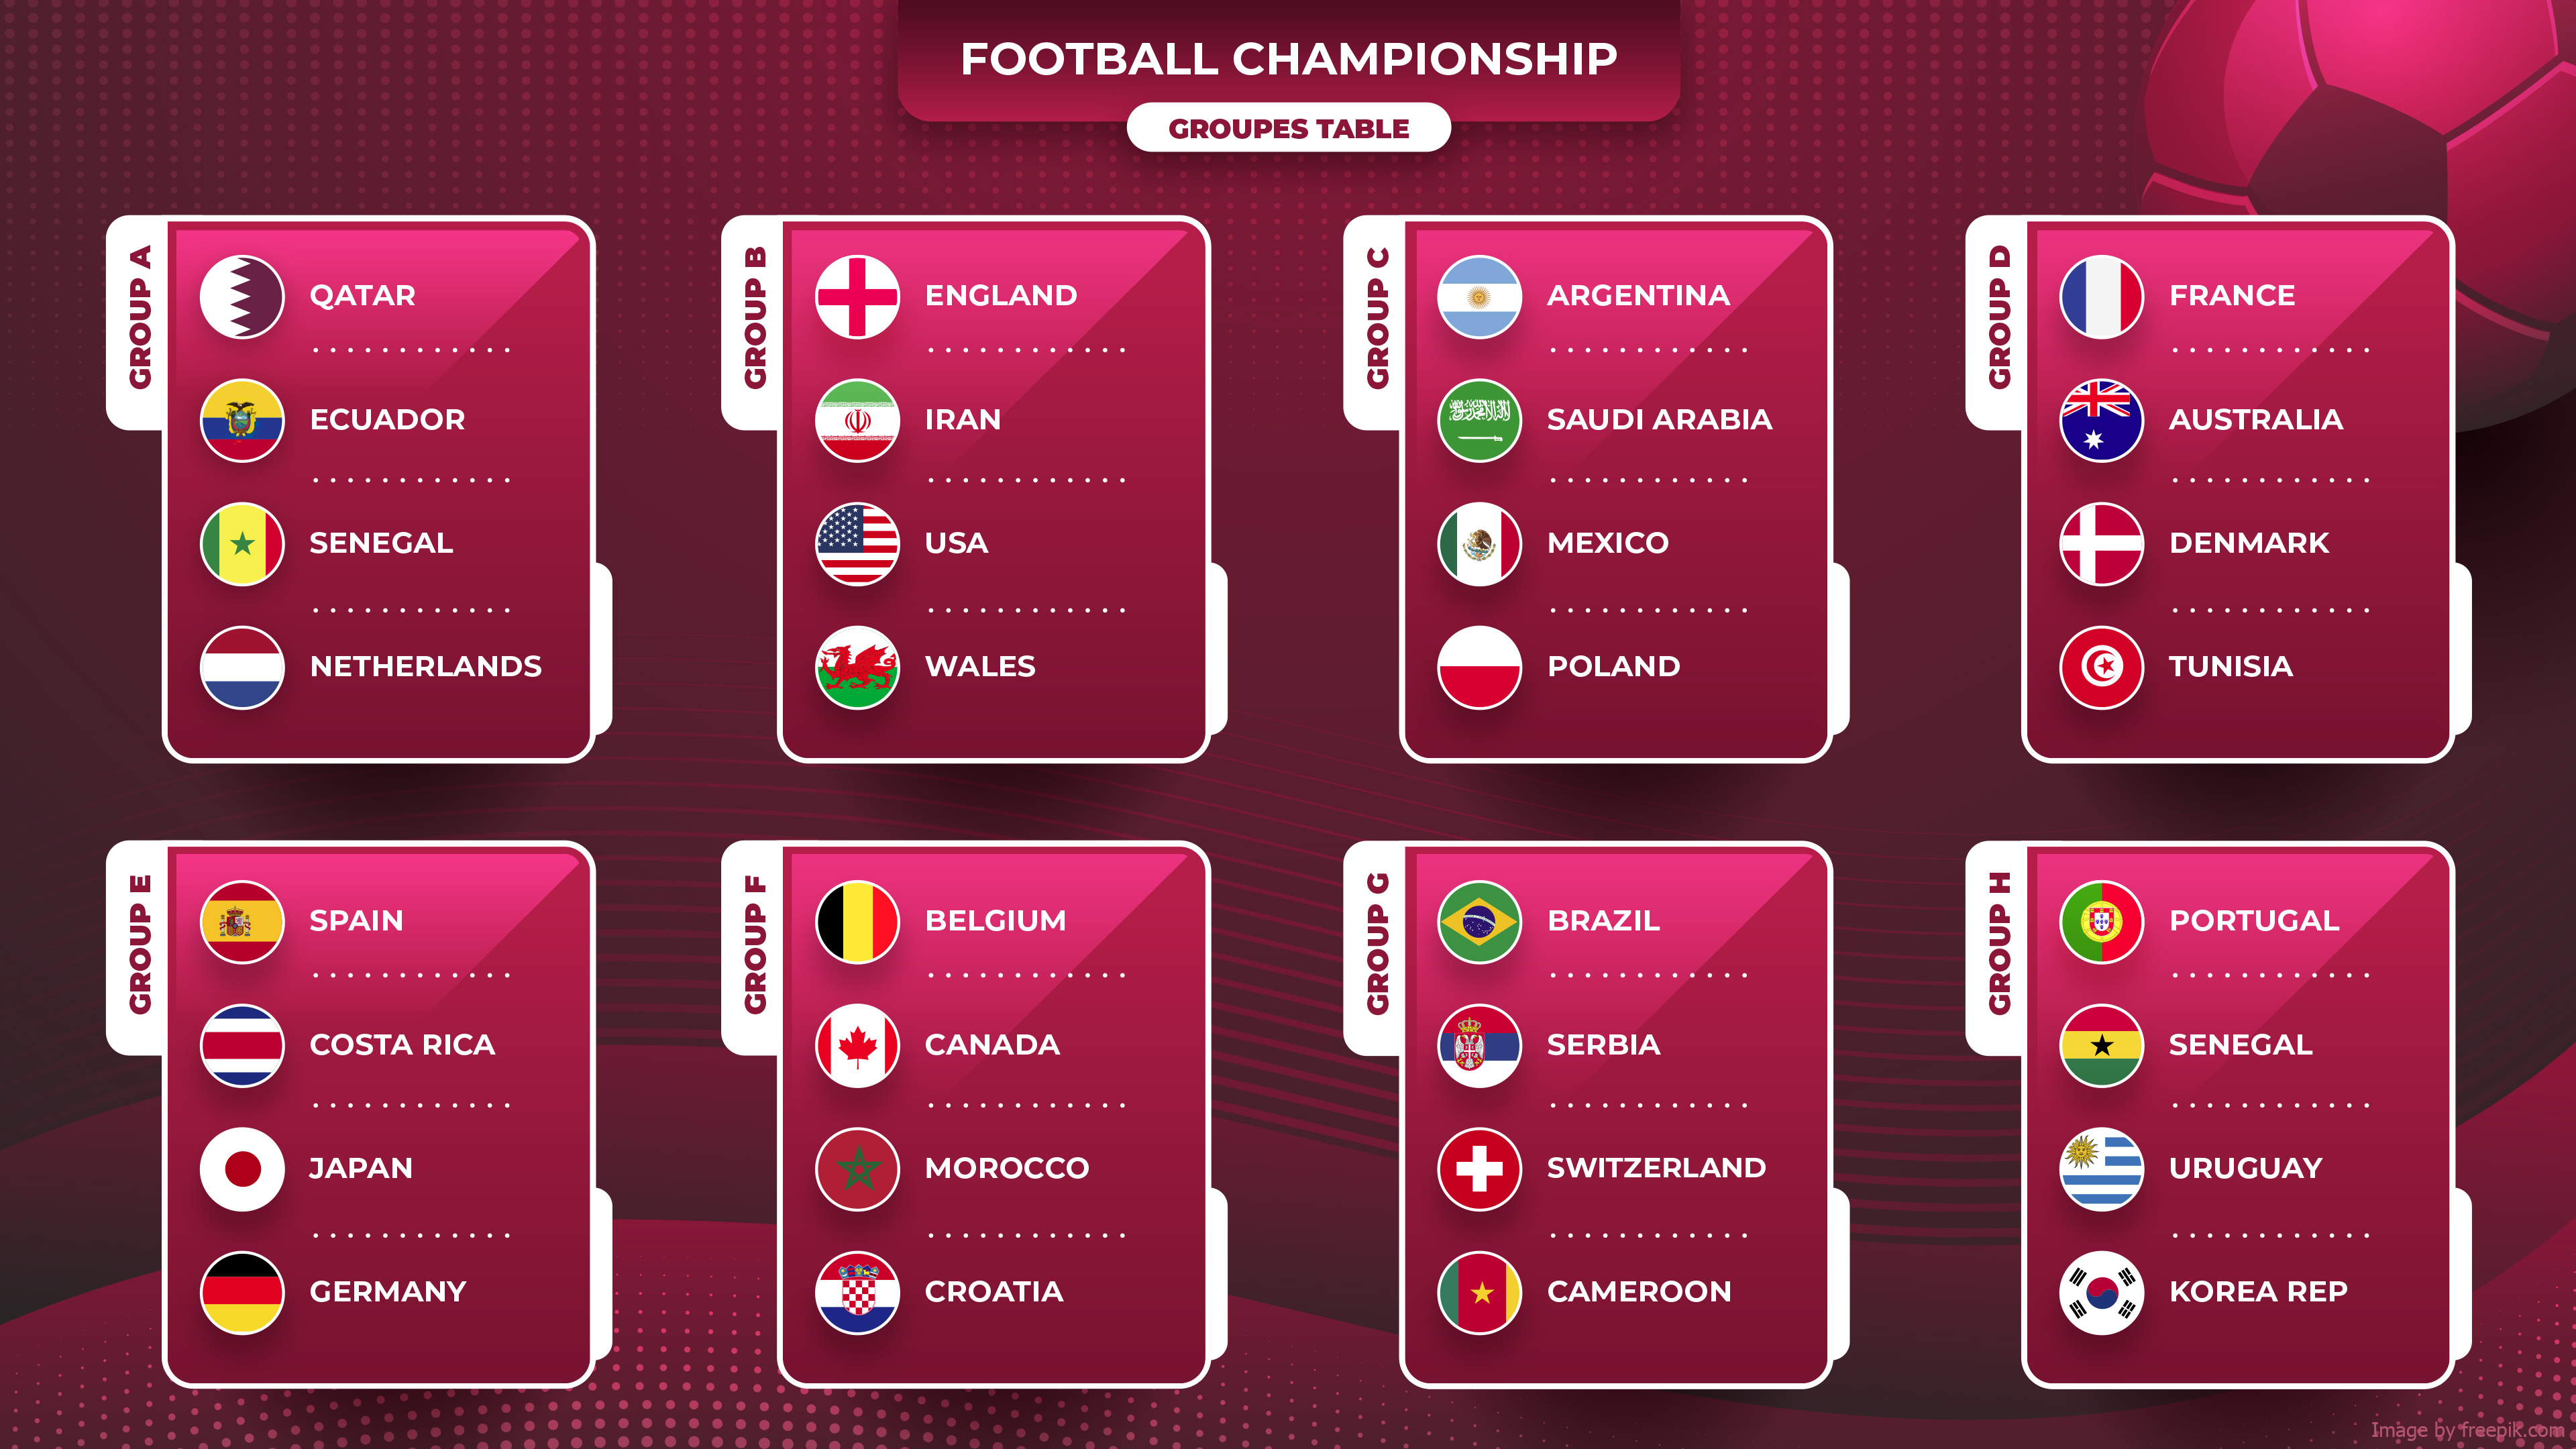 Fifa World Cup Qatar 2022 023 Mistrzostwa Swiata W Pilce Noznej Katar